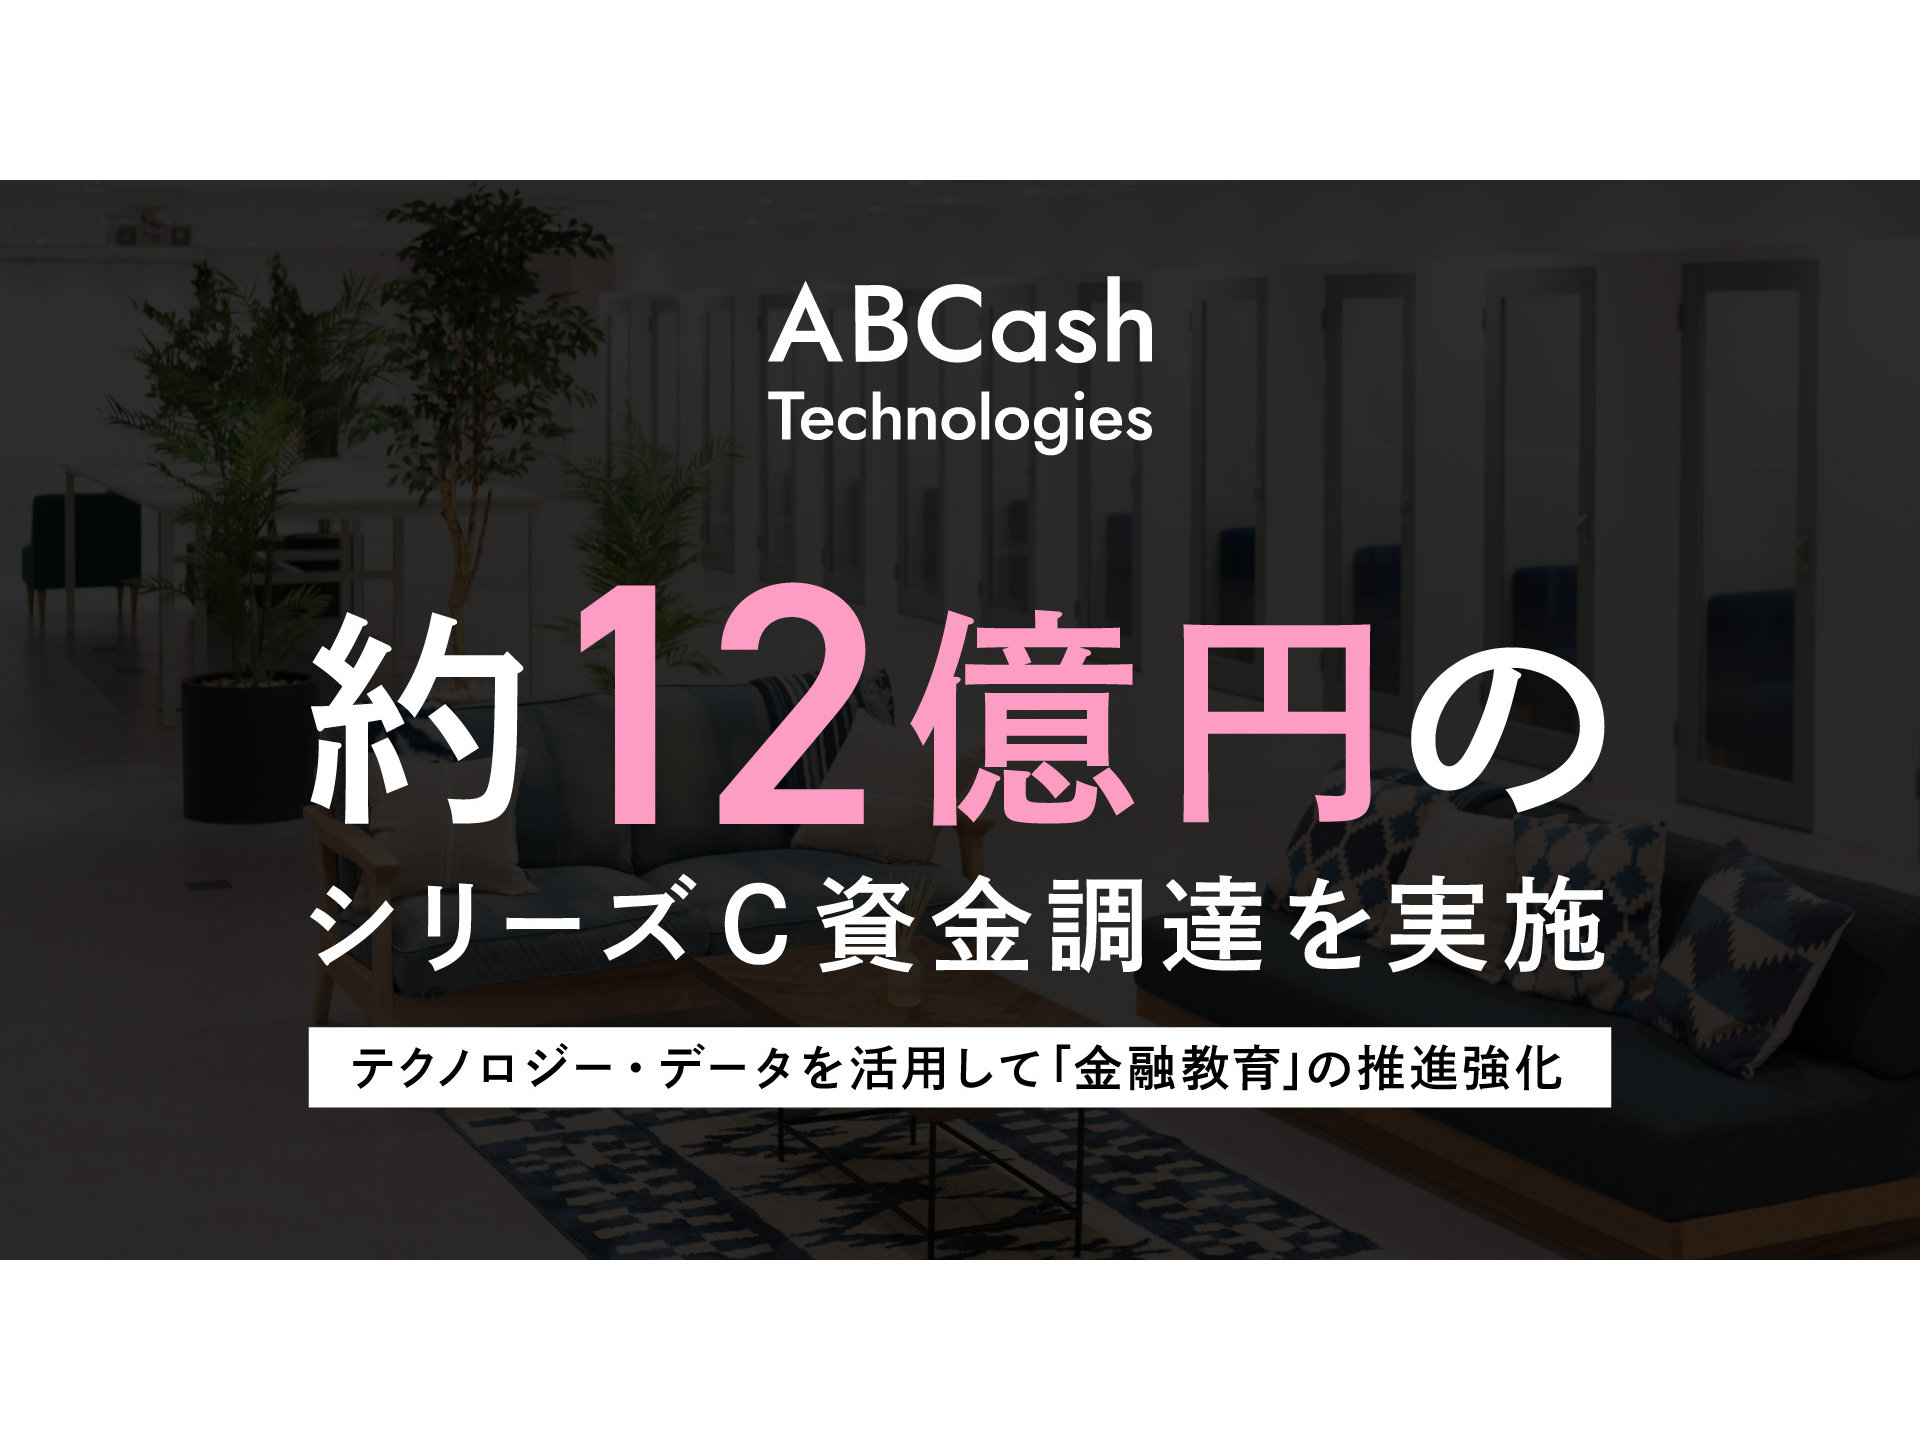 金融教育サービス「ABCash」などを展開するABCash Technologiesが約12億円のシリーズC調達